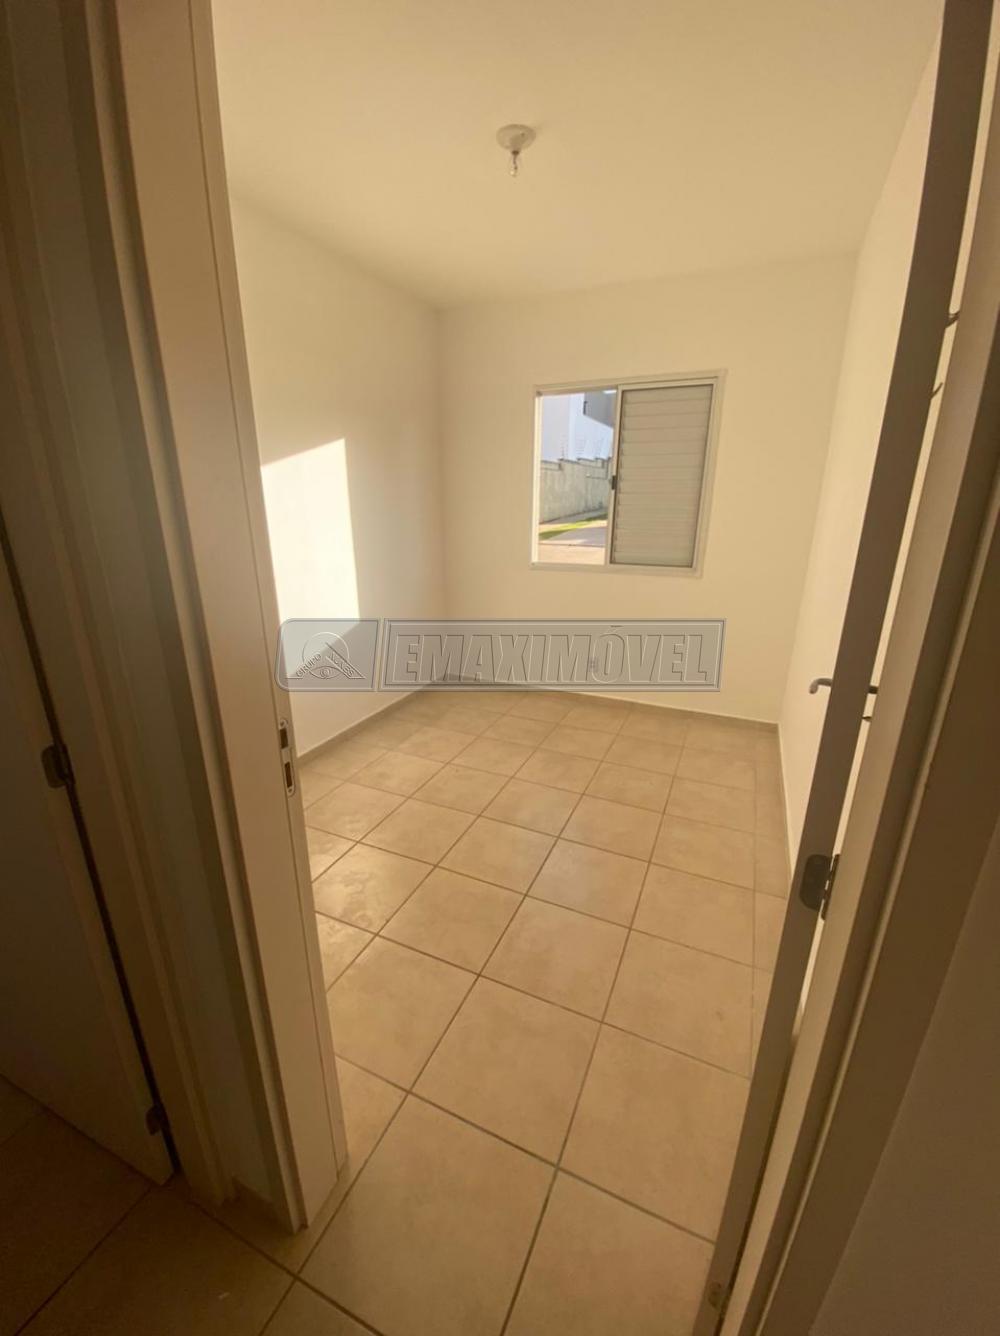 Comprar Apartamento / Padrão em Sorocaba R$ 180.000,00 - Foto 15